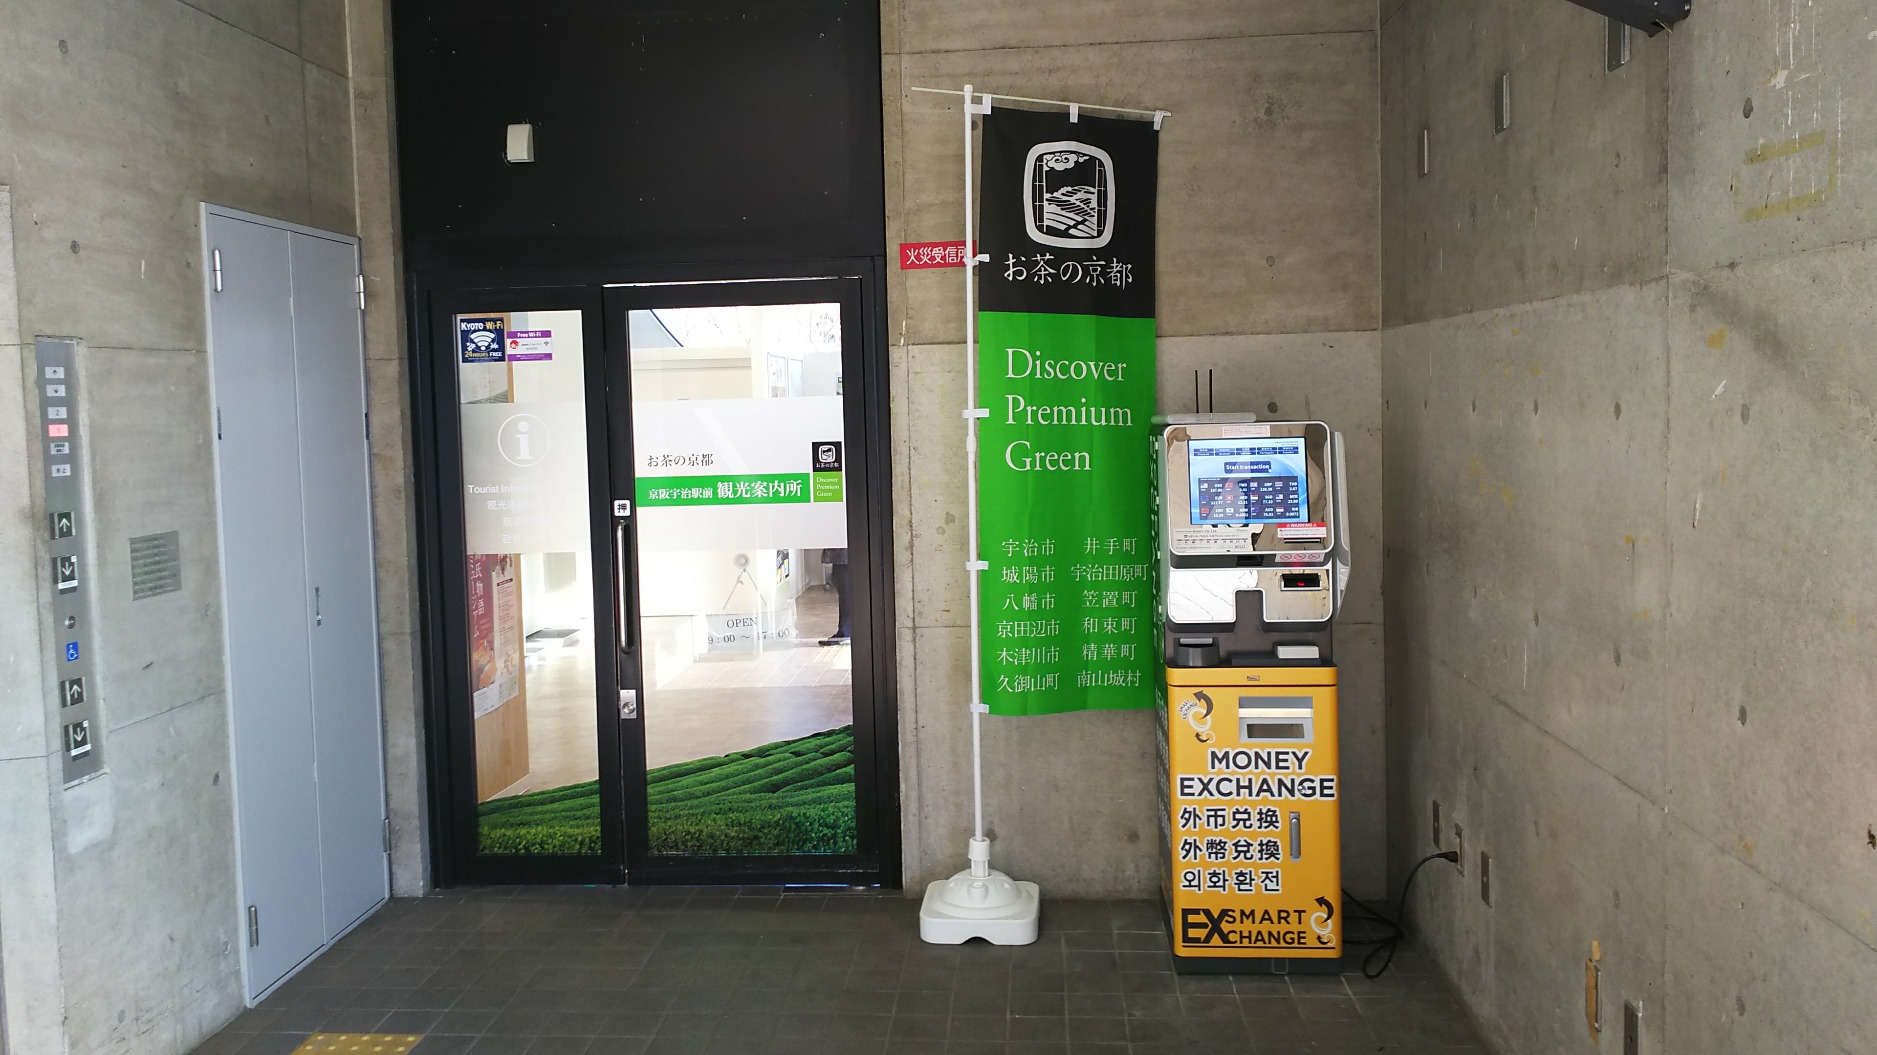  お茶の京都 京阪宇治駅前観光案内所横（京阪宇治駅構内）に外貨両替機が設置されました